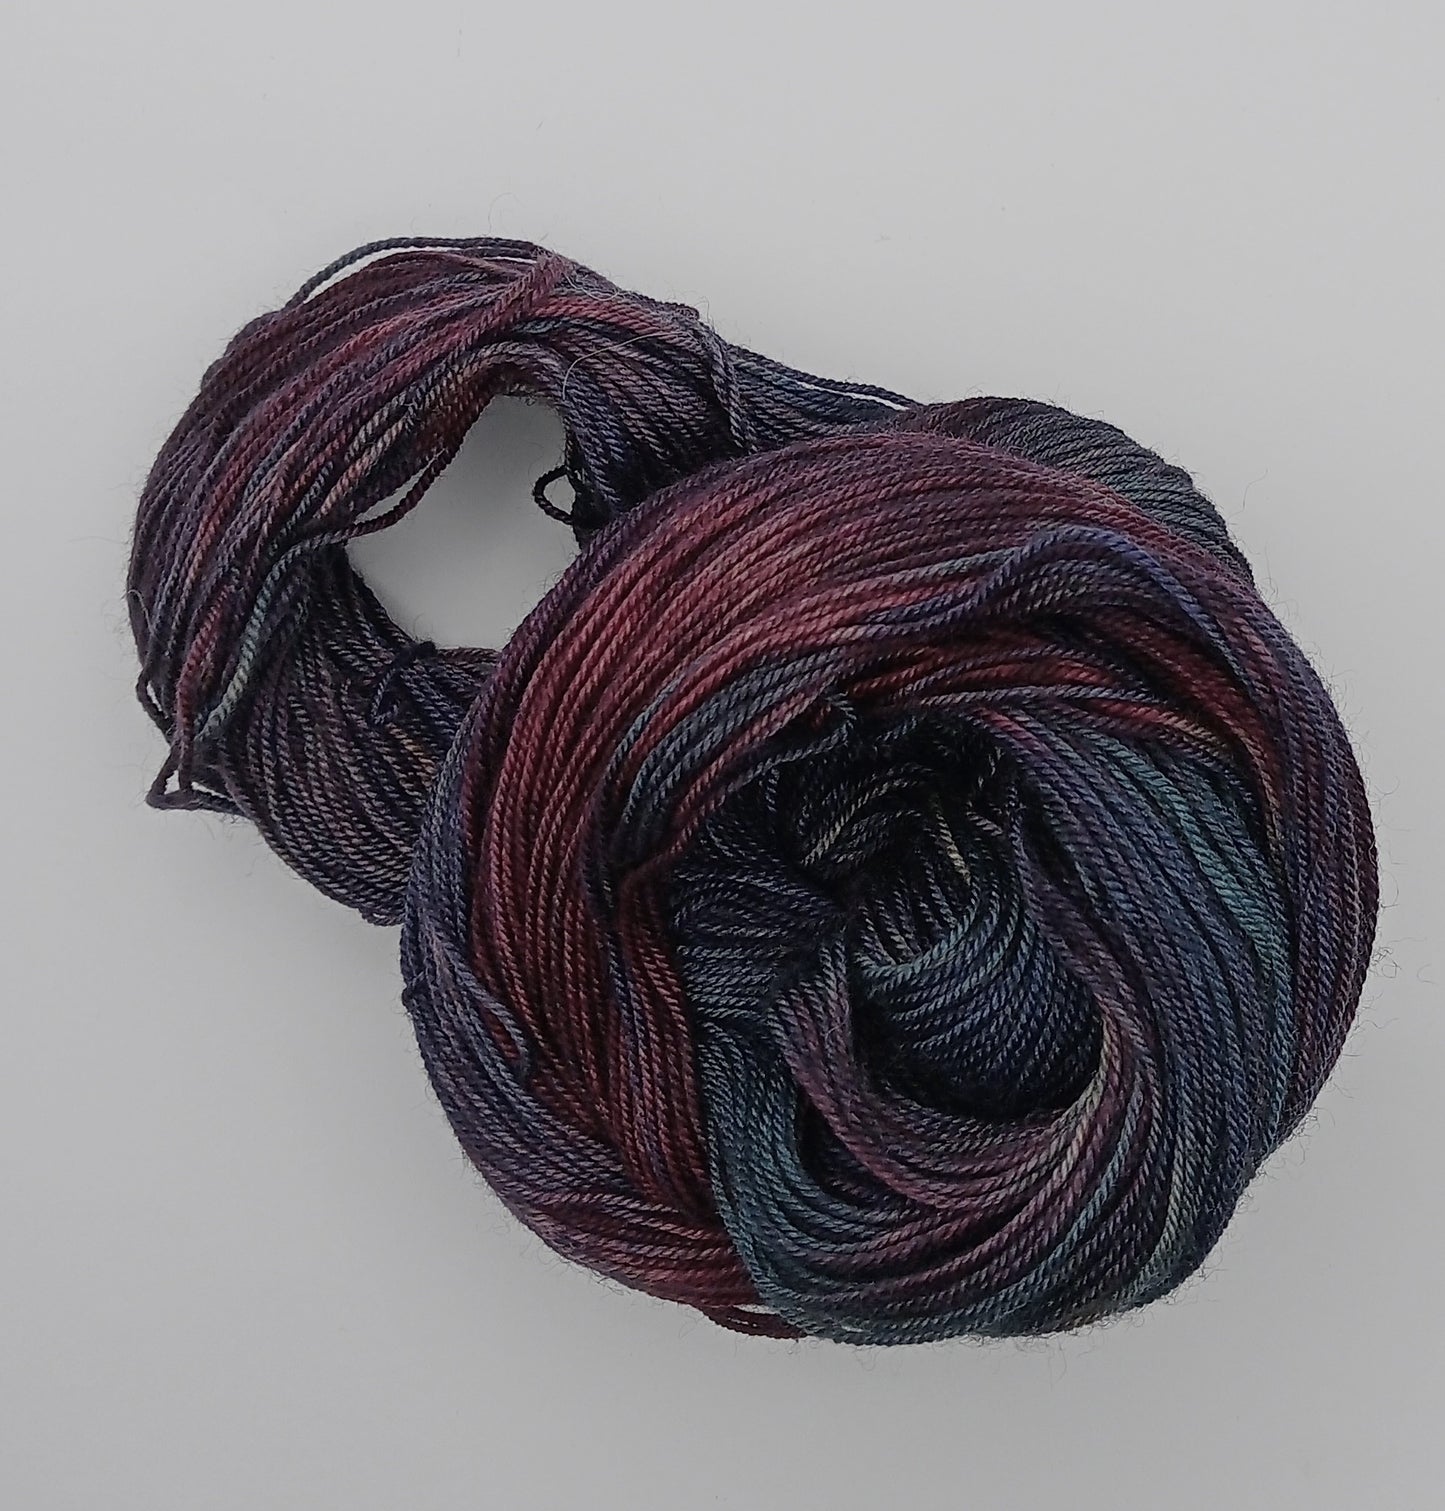 100G Merino/Silk/Yak hand dyed luxury Yarn 4 Ply- "Tui"